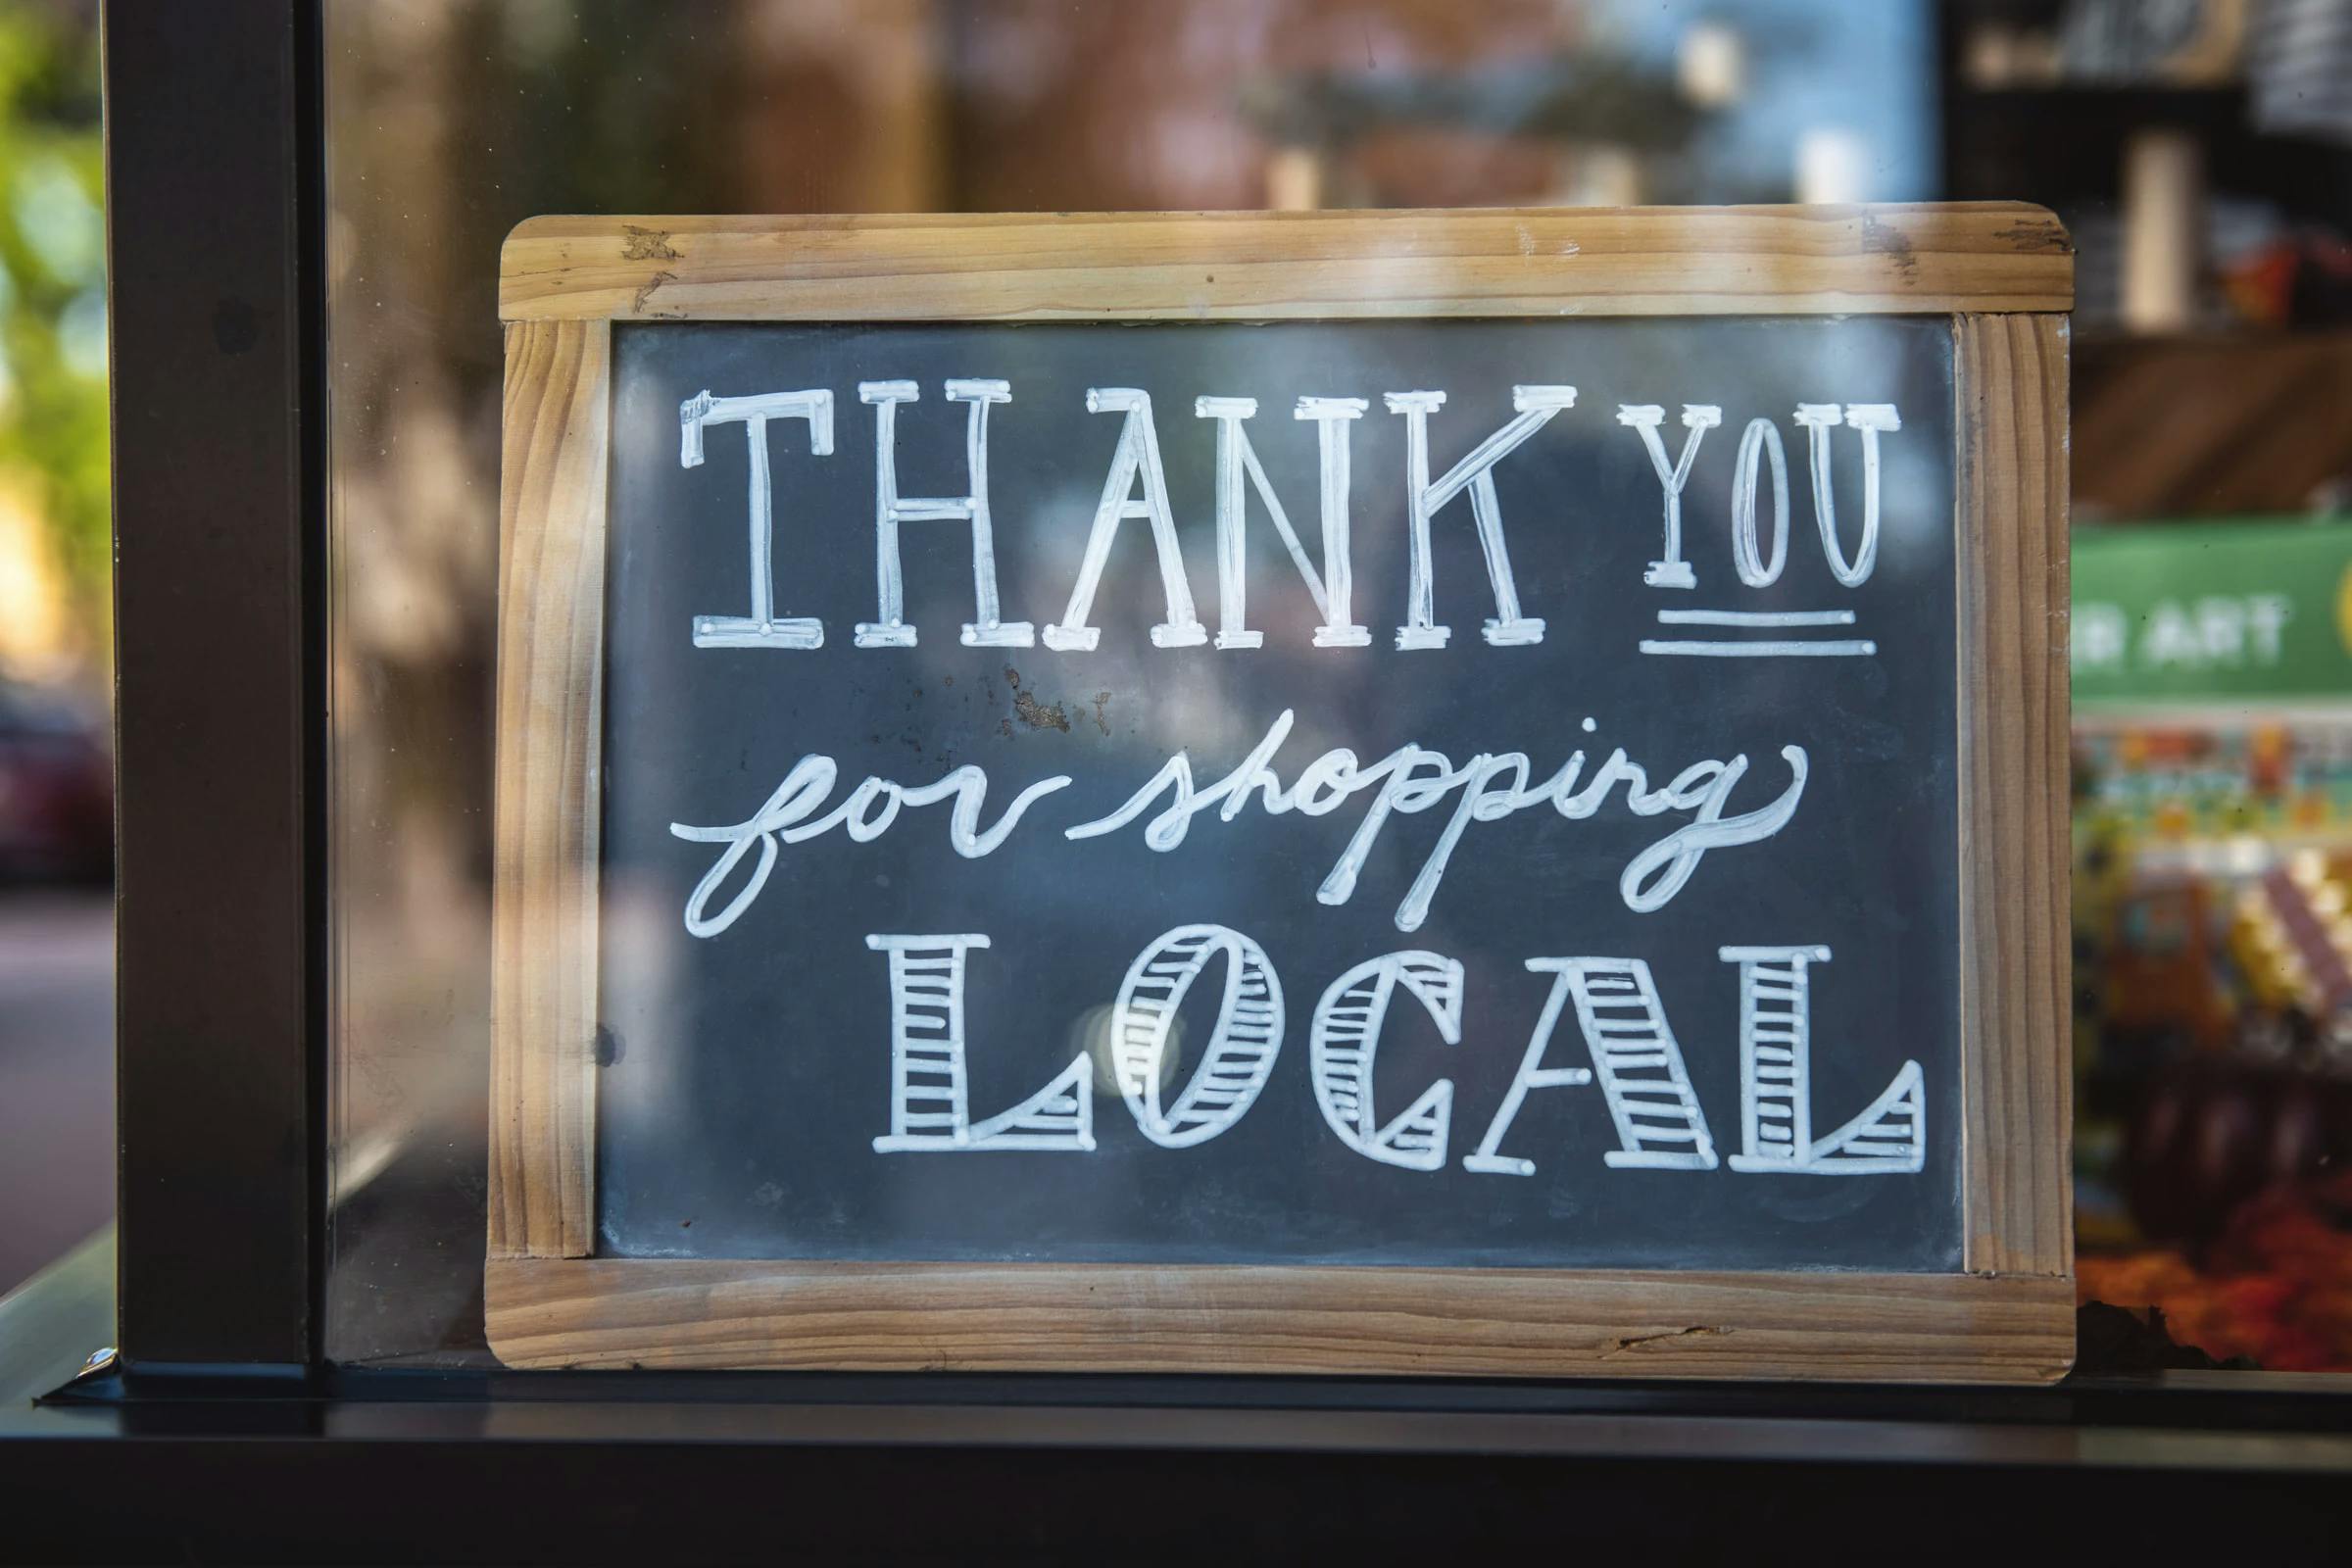 Un panneau au travers la vitrine d'un magasin affichant "Thank you for shopping local"